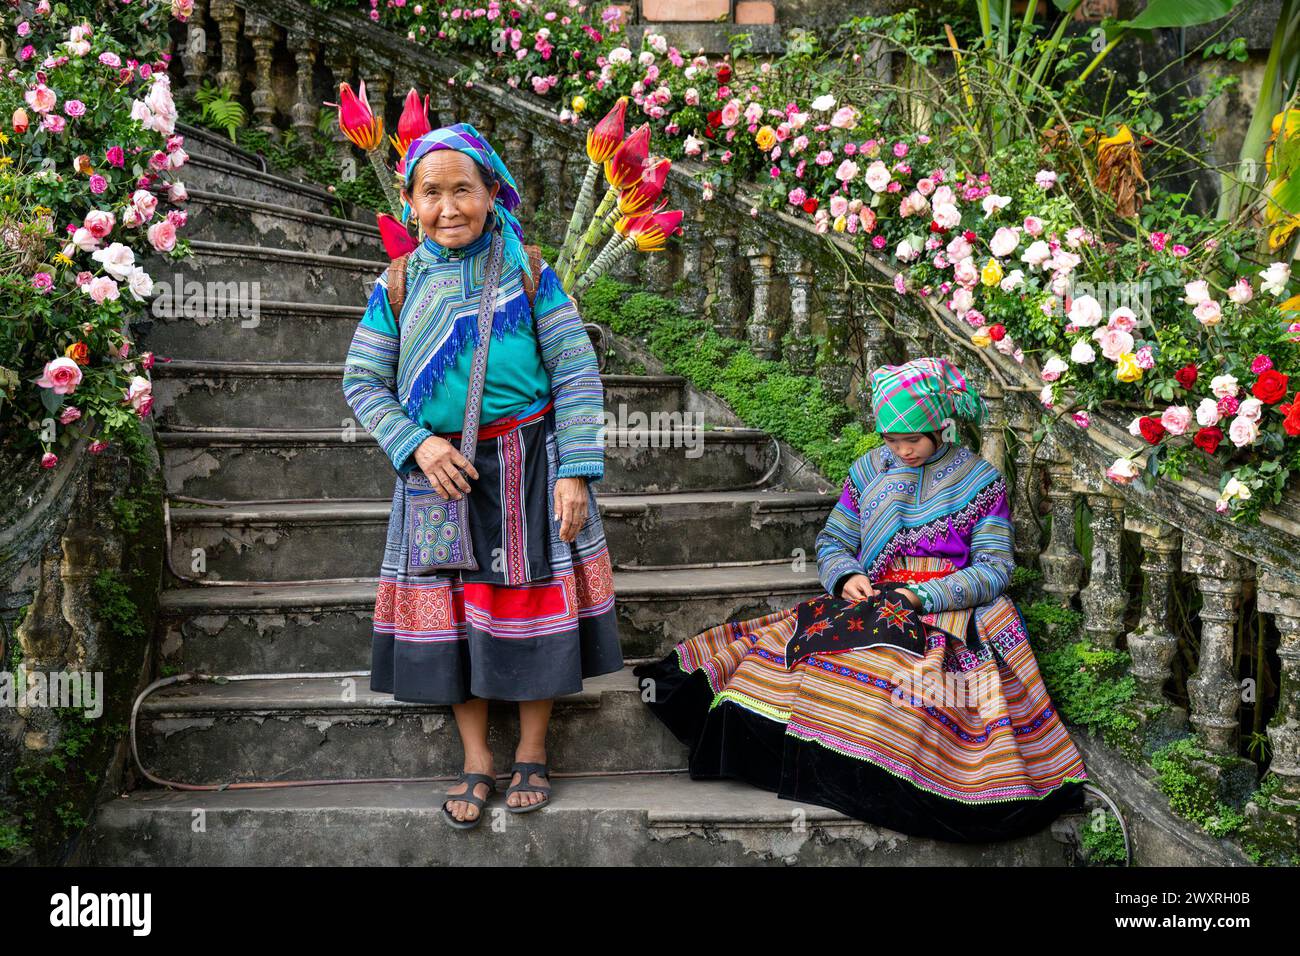 Donne Hmong di fiori sedute sulle scale del Palazzo dei Re Hmong (Vau Meo) a Bac ha, provincia di Lao Cai, Vietnam Foto Stock